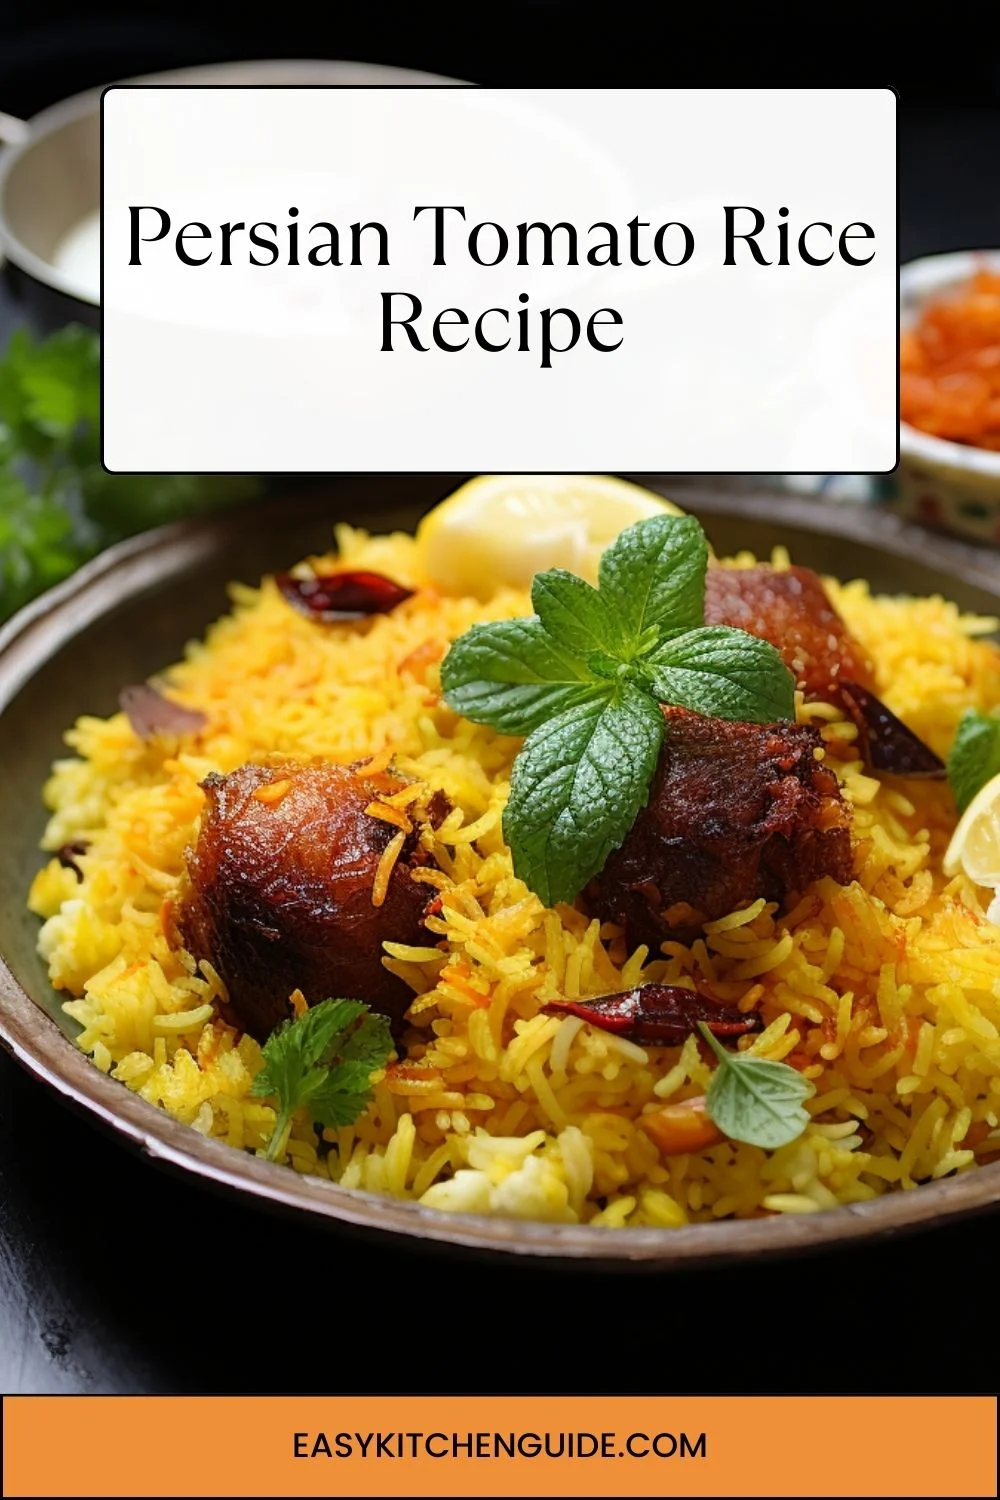 Persian Tomato Rice Recipe